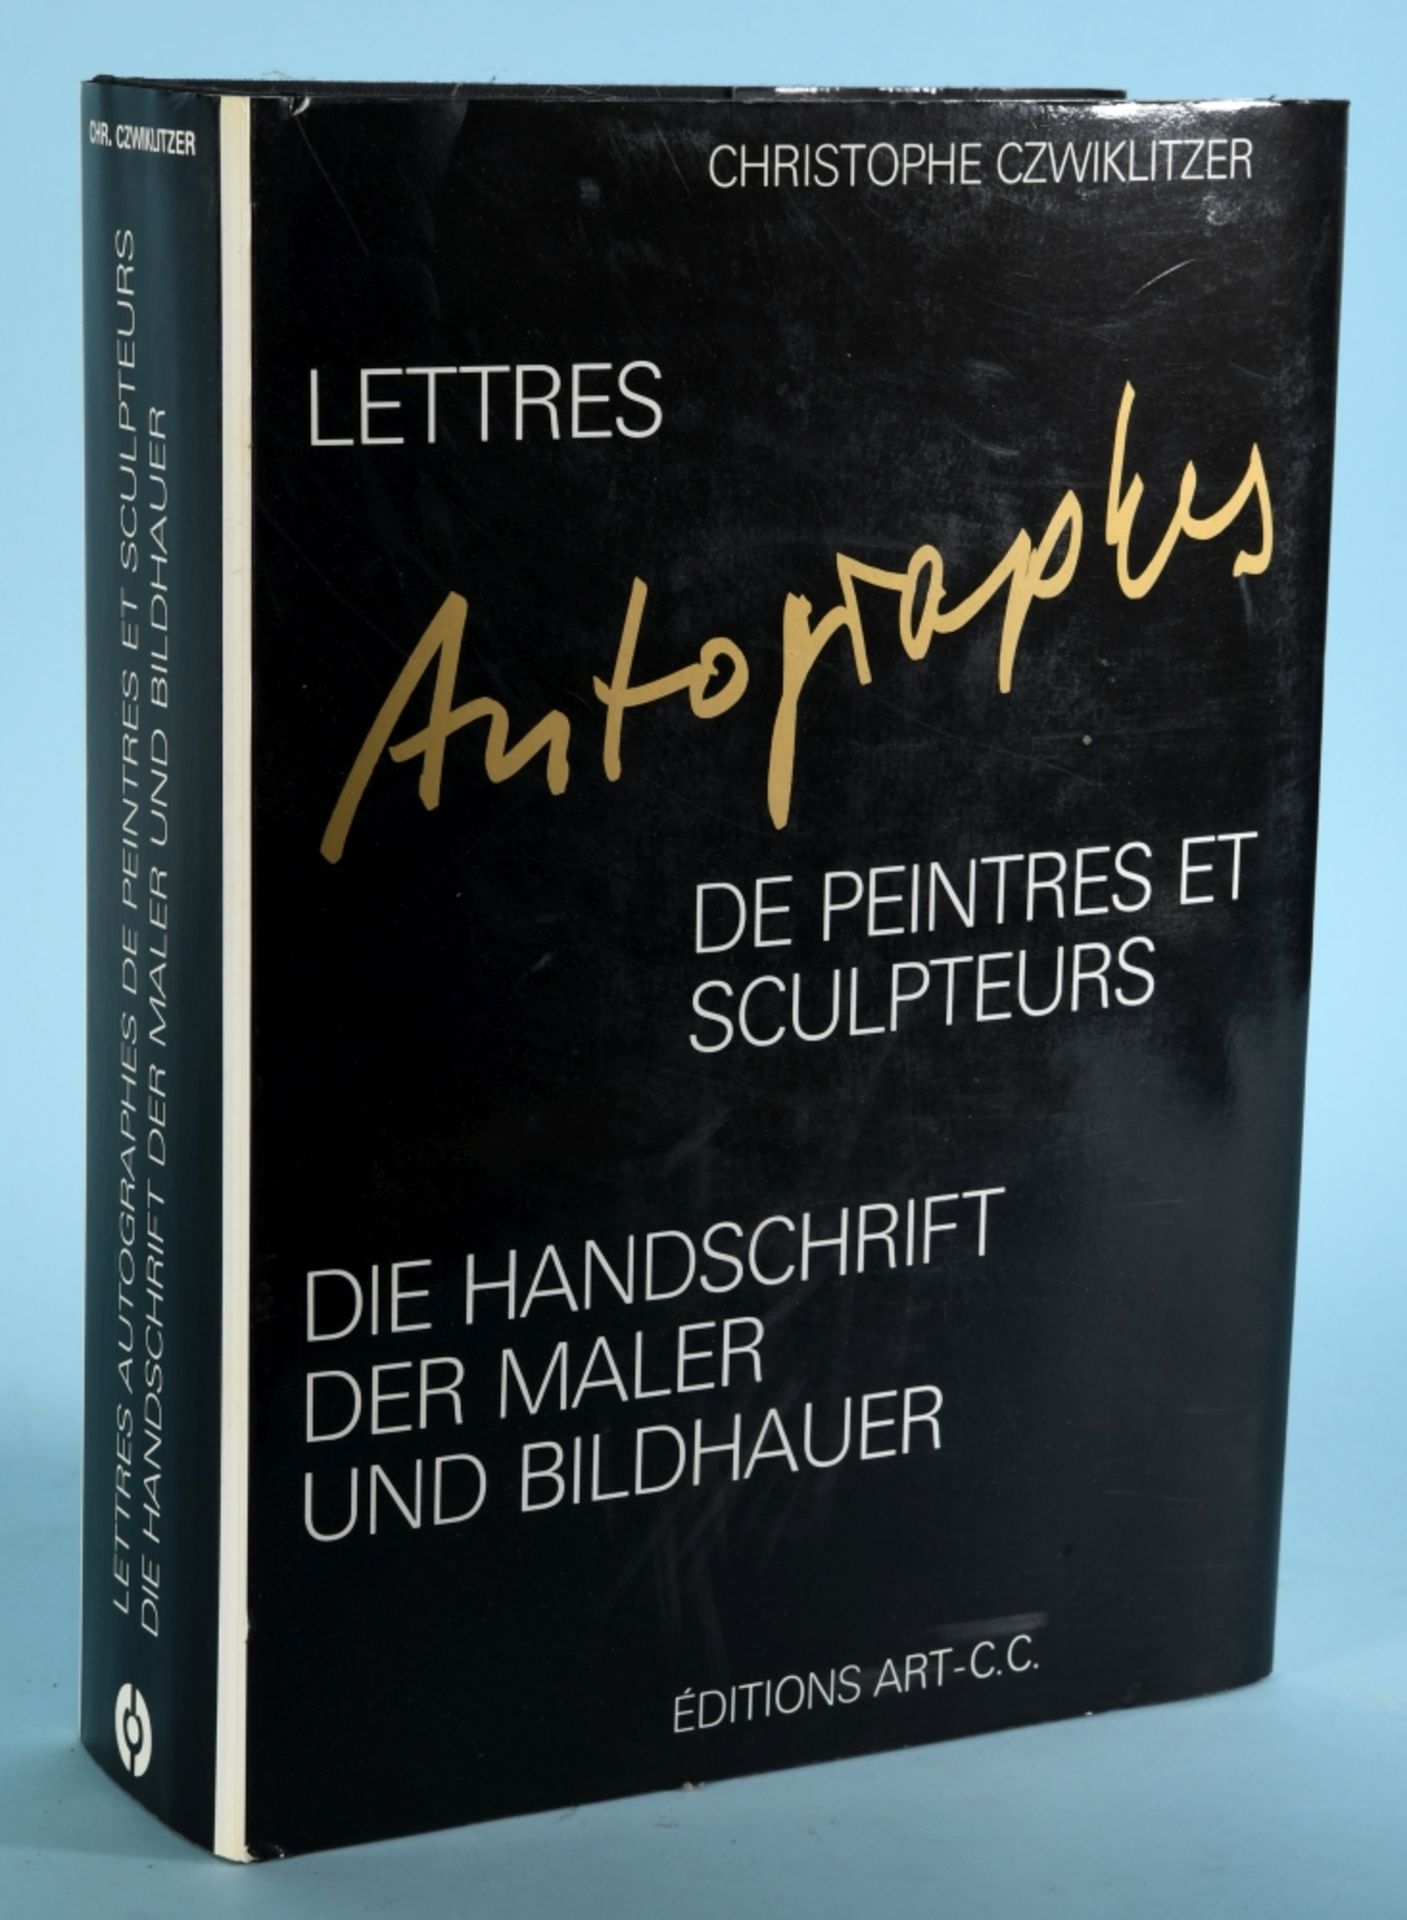 Czwiklitzer, Christophe "Die Handschrift der Maler und Bildhauer"